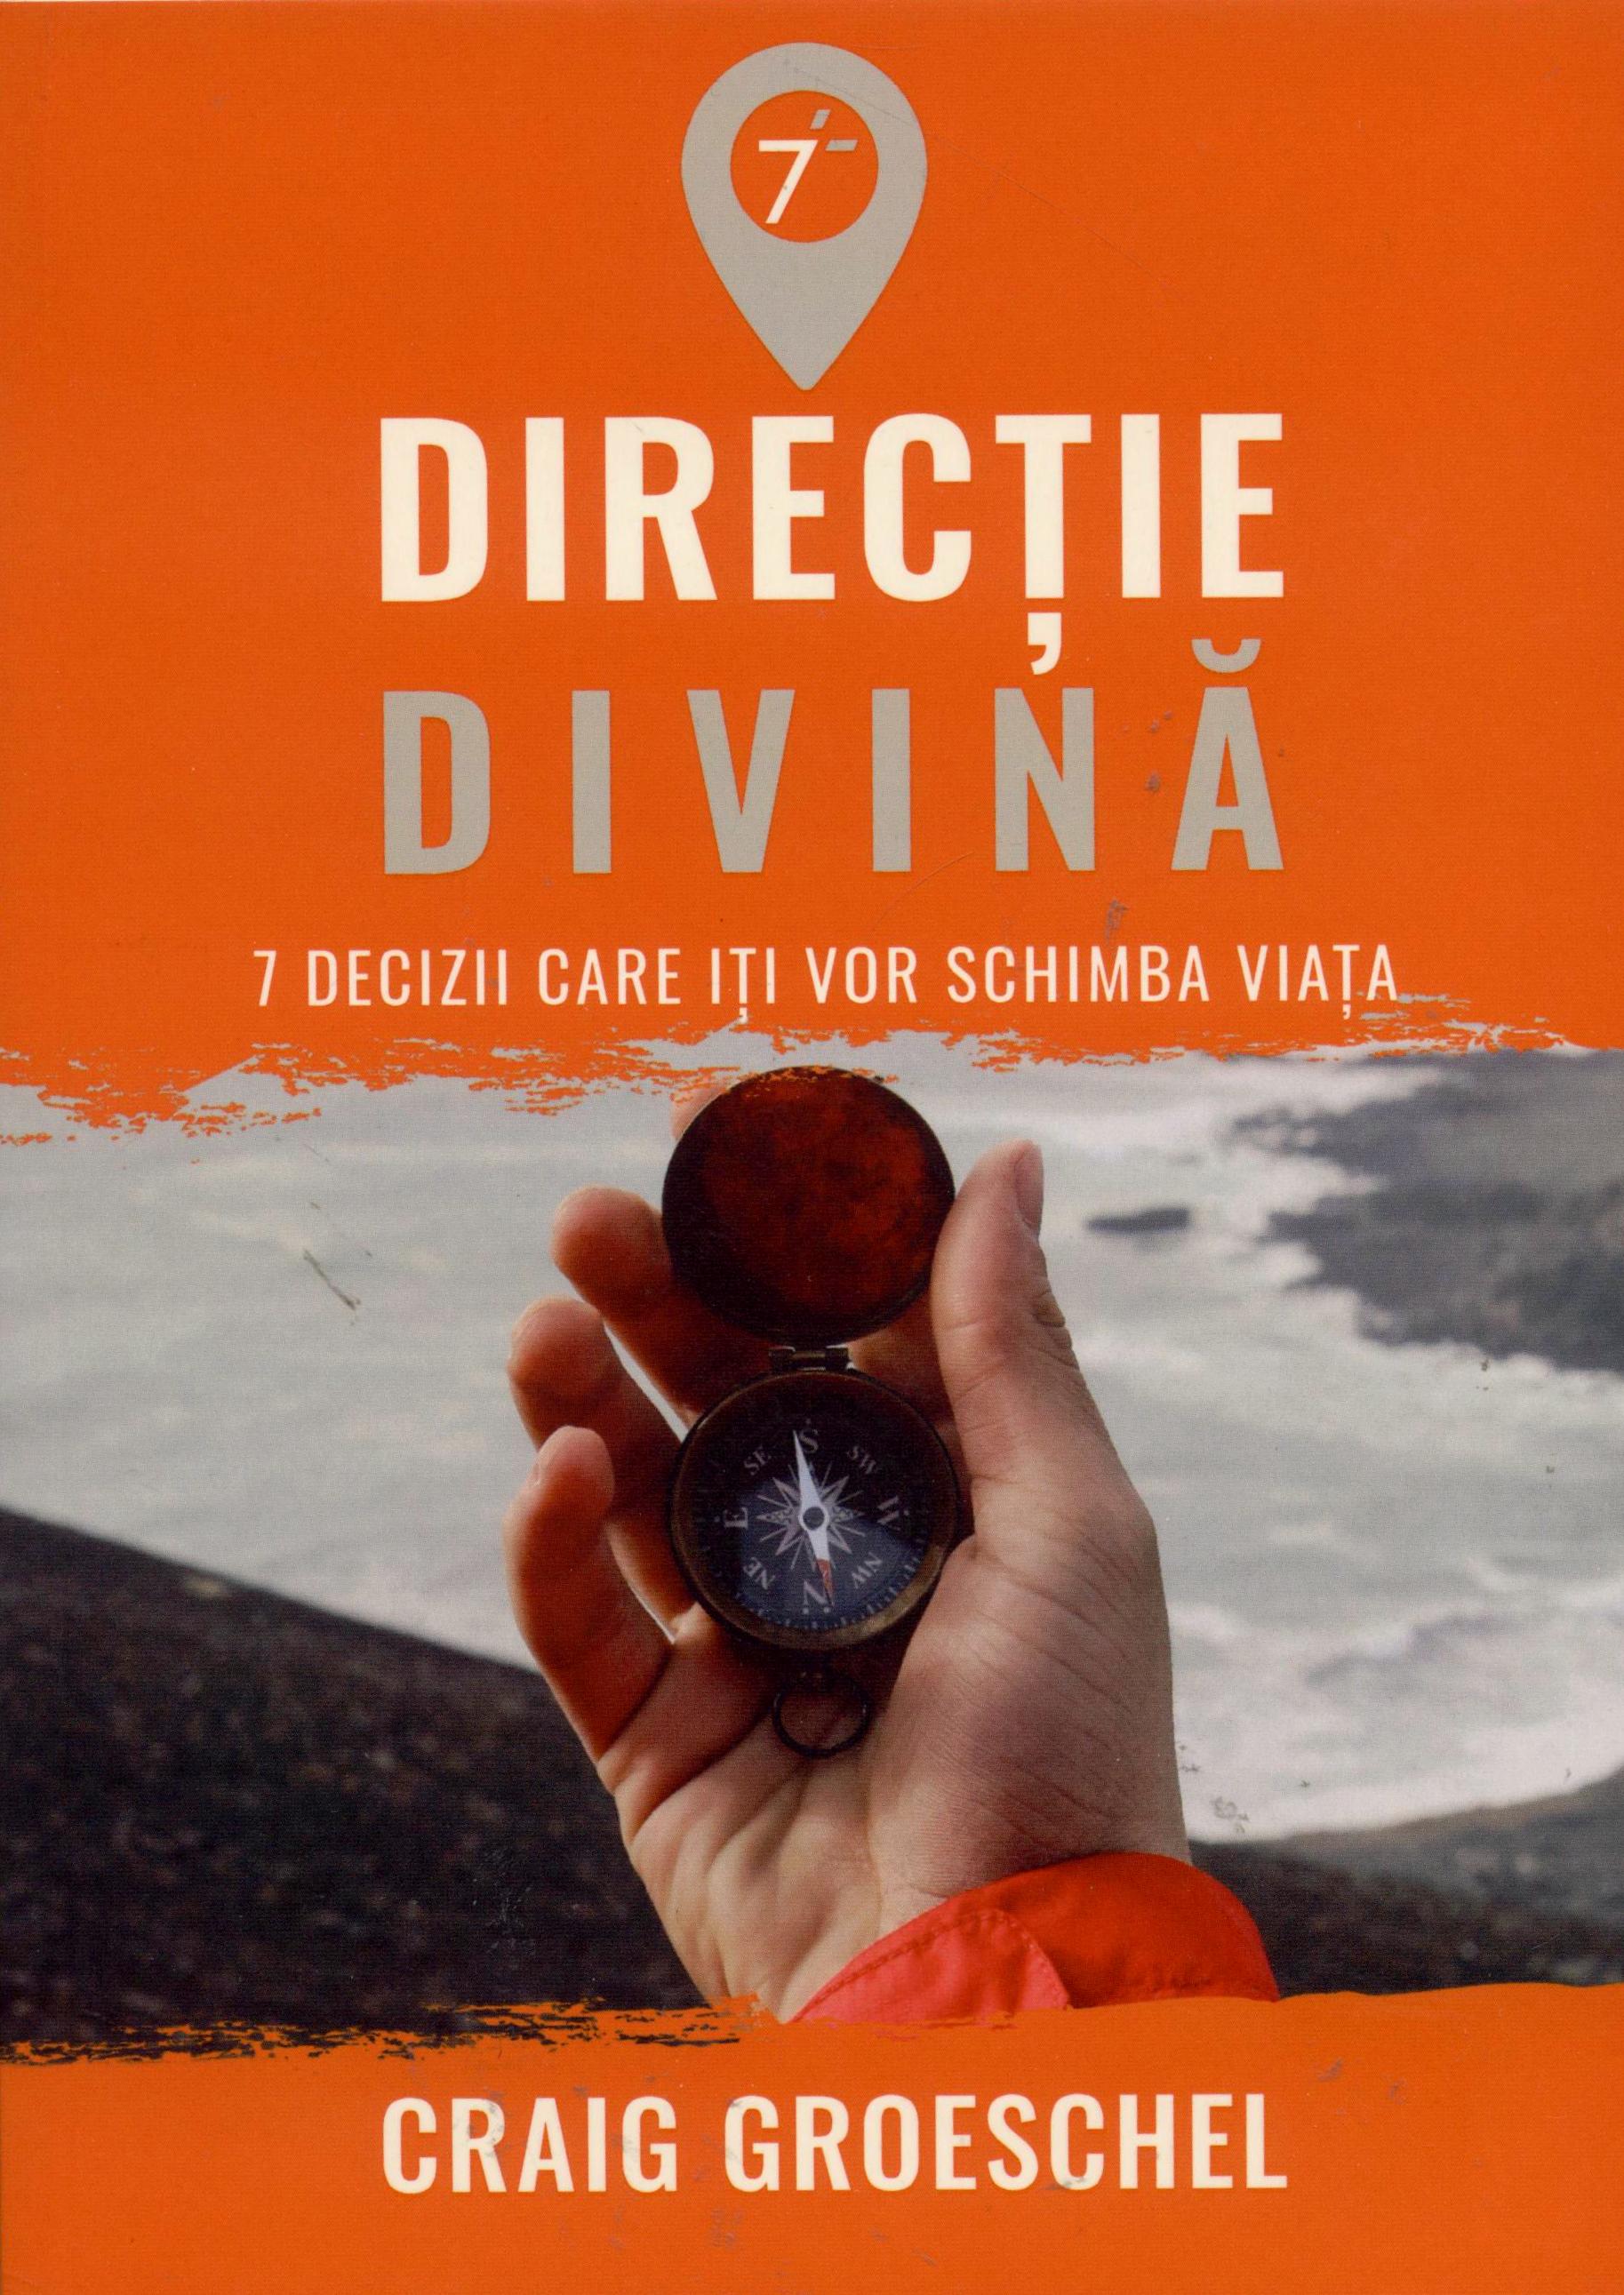 Directie divina | Craig Groeschel